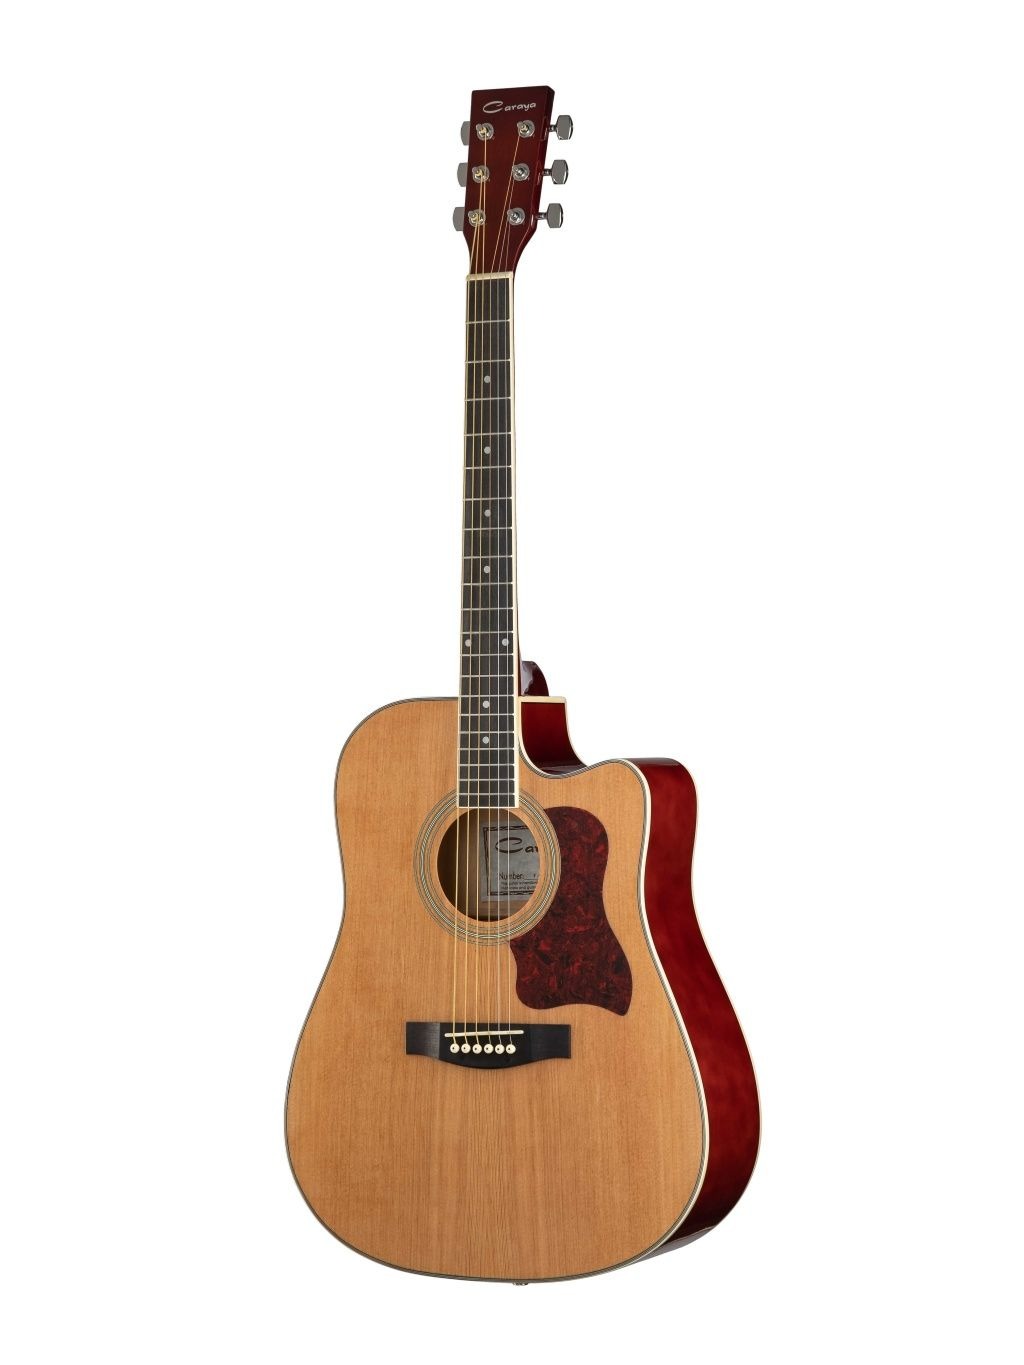 Акустические гитары Caraya F641-N акустическая гитара с вырезом 95 см